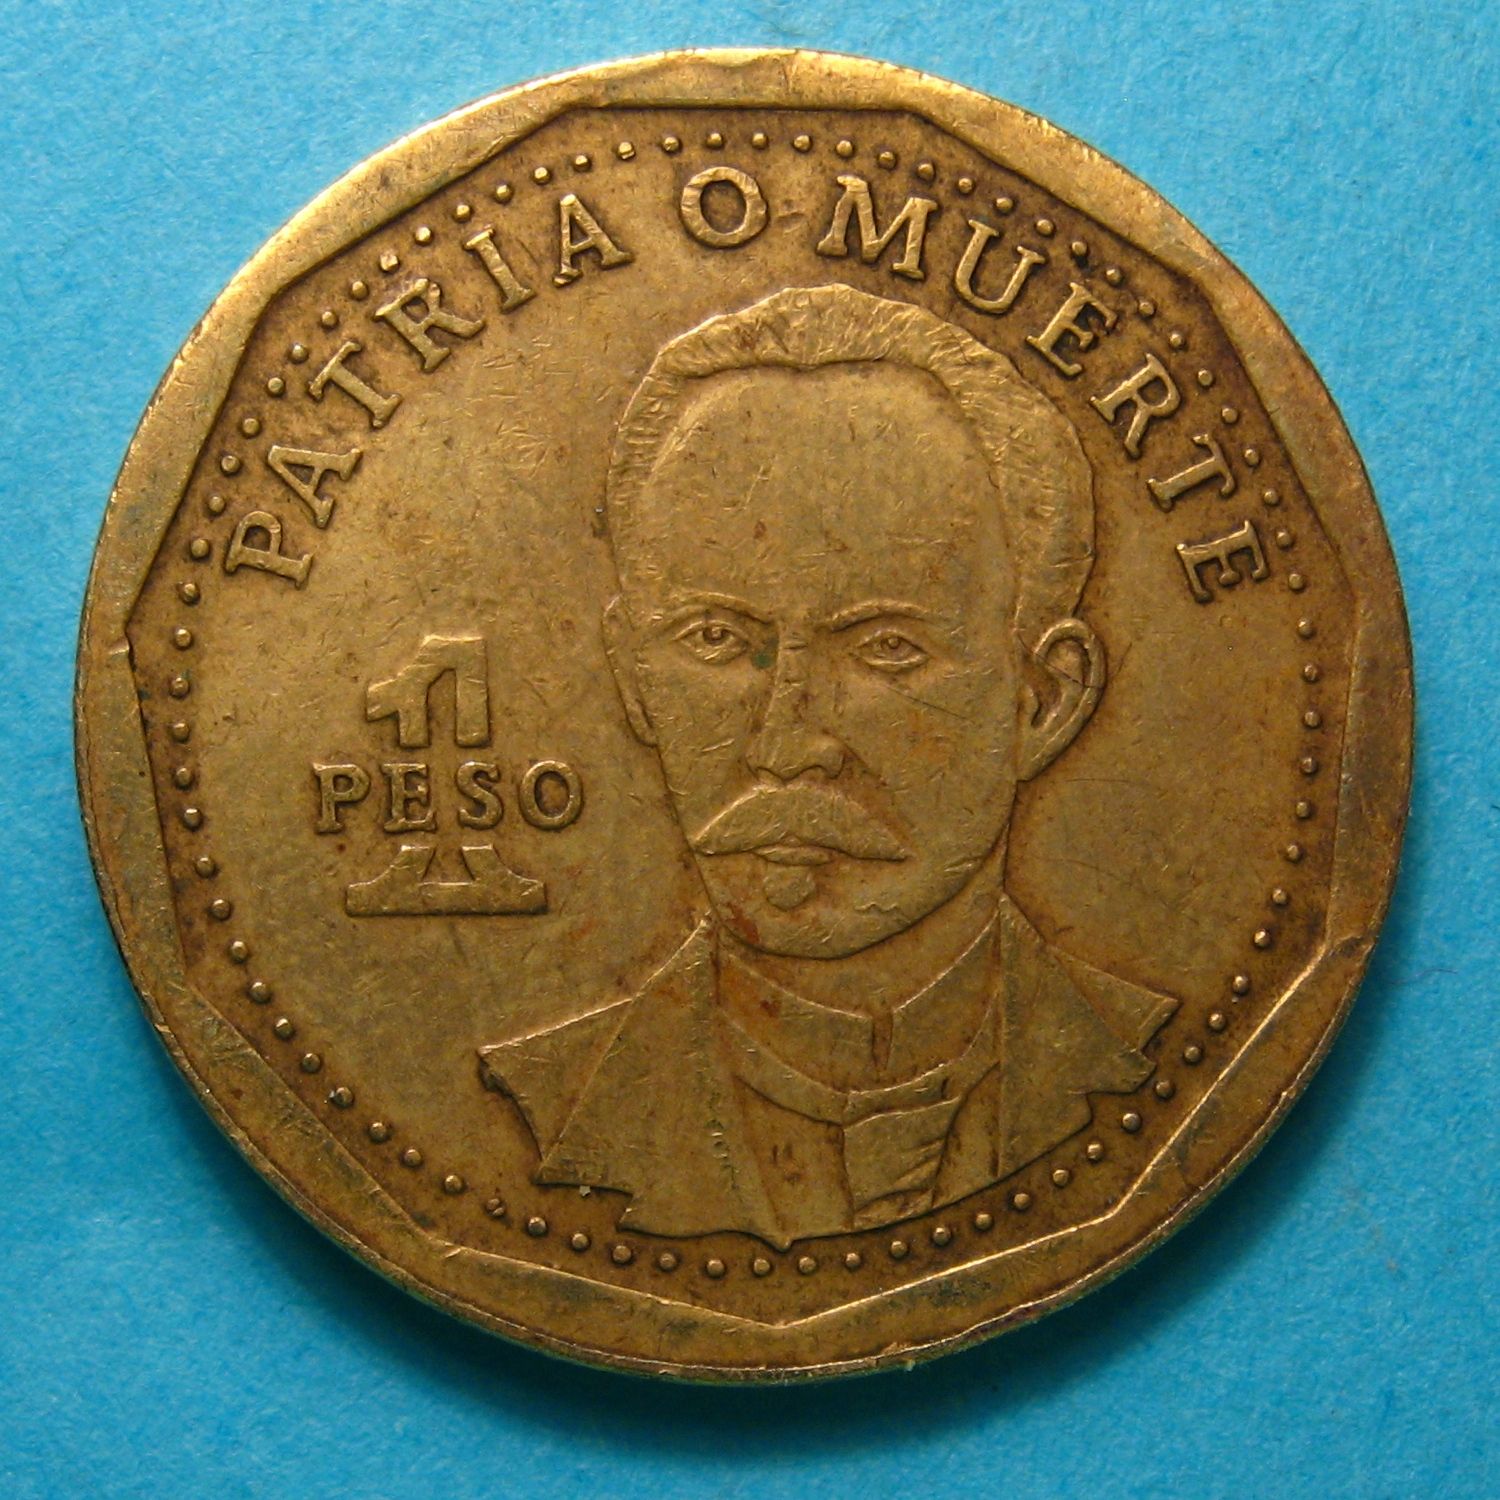 1 peso 2002 Cuba.jpg